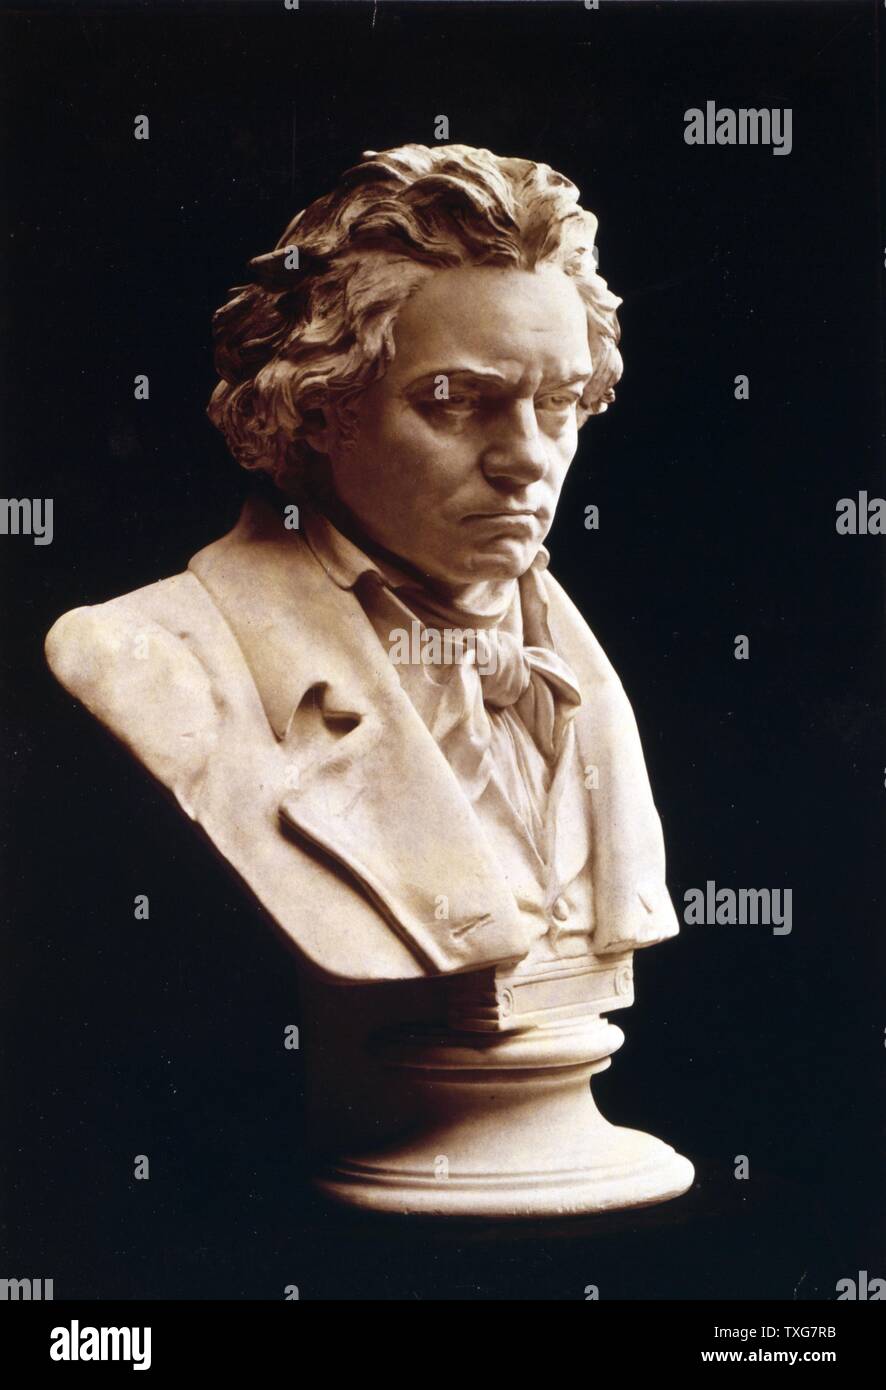 Buste de Ludwig van Beethoven, compositeur et pianiste allemand. L'un des plus influents compositeurs occidentaux dont la musique classique et romantique de la pontée périodes Banque D'Images